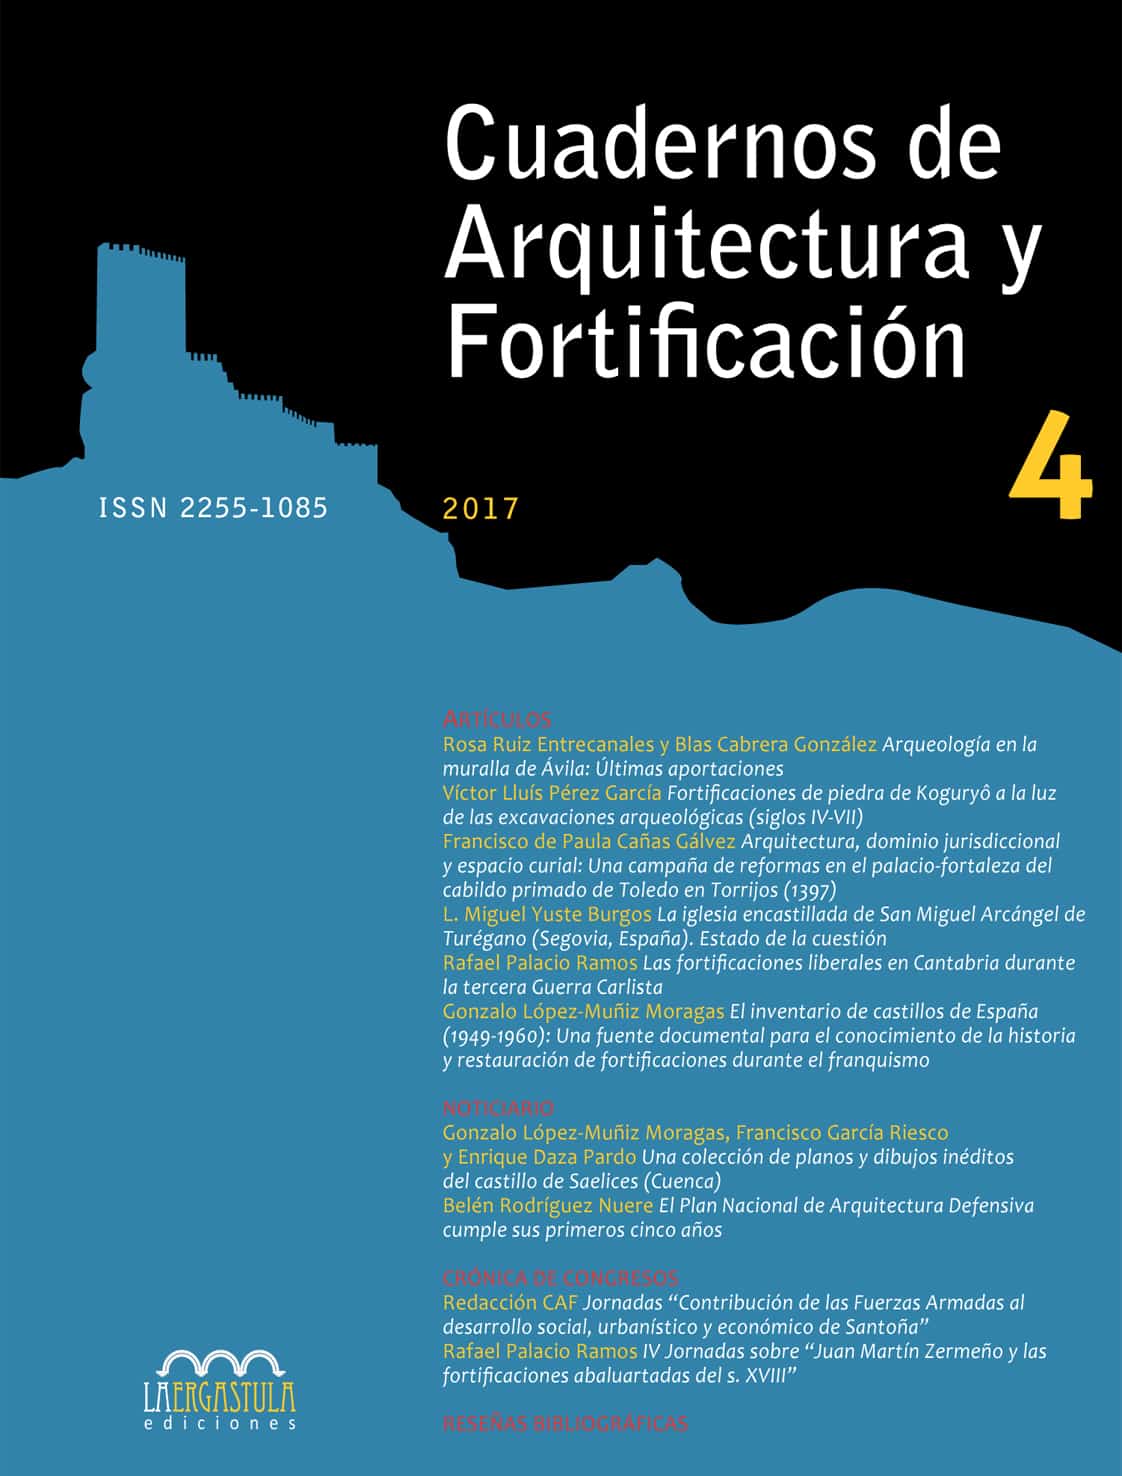 Revista Cuadernos de Arquitectura y Fortificación, Nº 4, año 2017